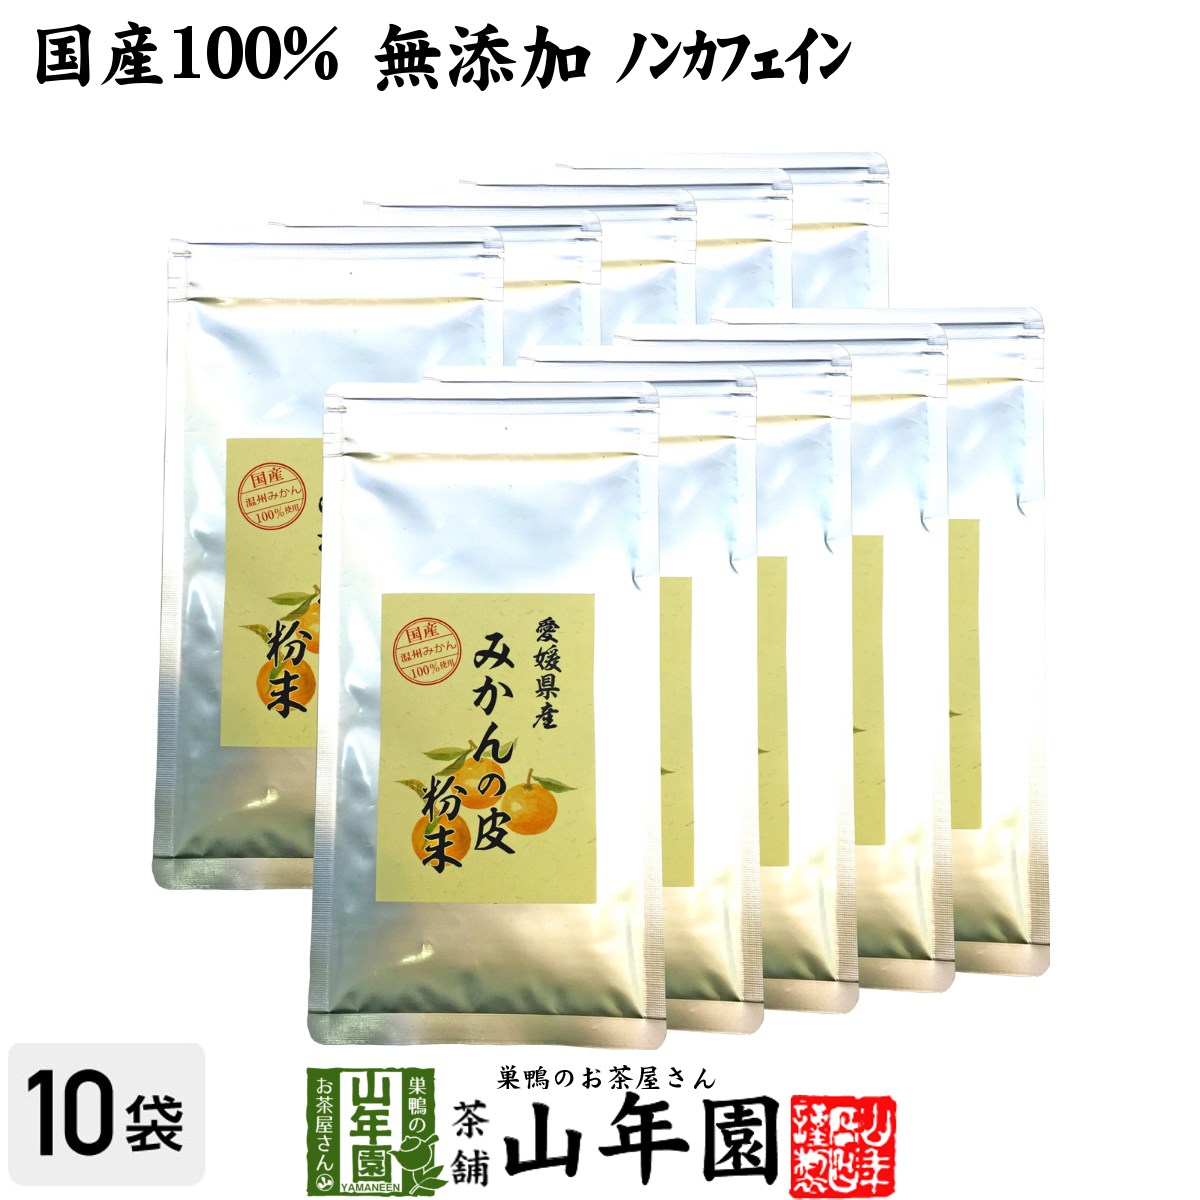 【国産 100%】温州みかんの皮 粉末 80g×10袋セット